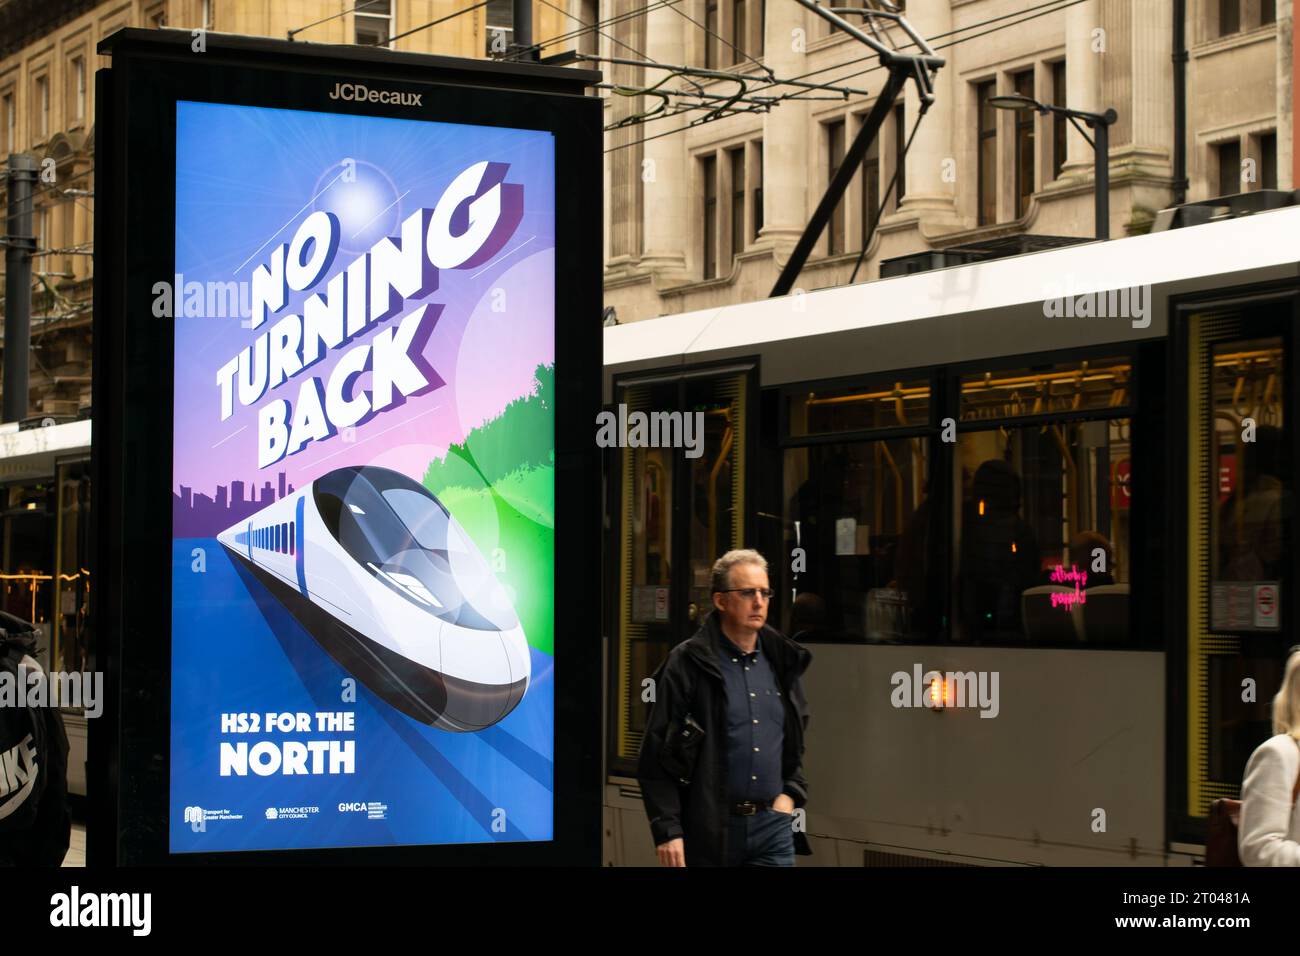 Affichez l'annonce de HS2 avec le texte No Turning Back, Manchester City centre. Tramway Metrolink. Semaine de conférence du parti conservateur. Banque D'Images